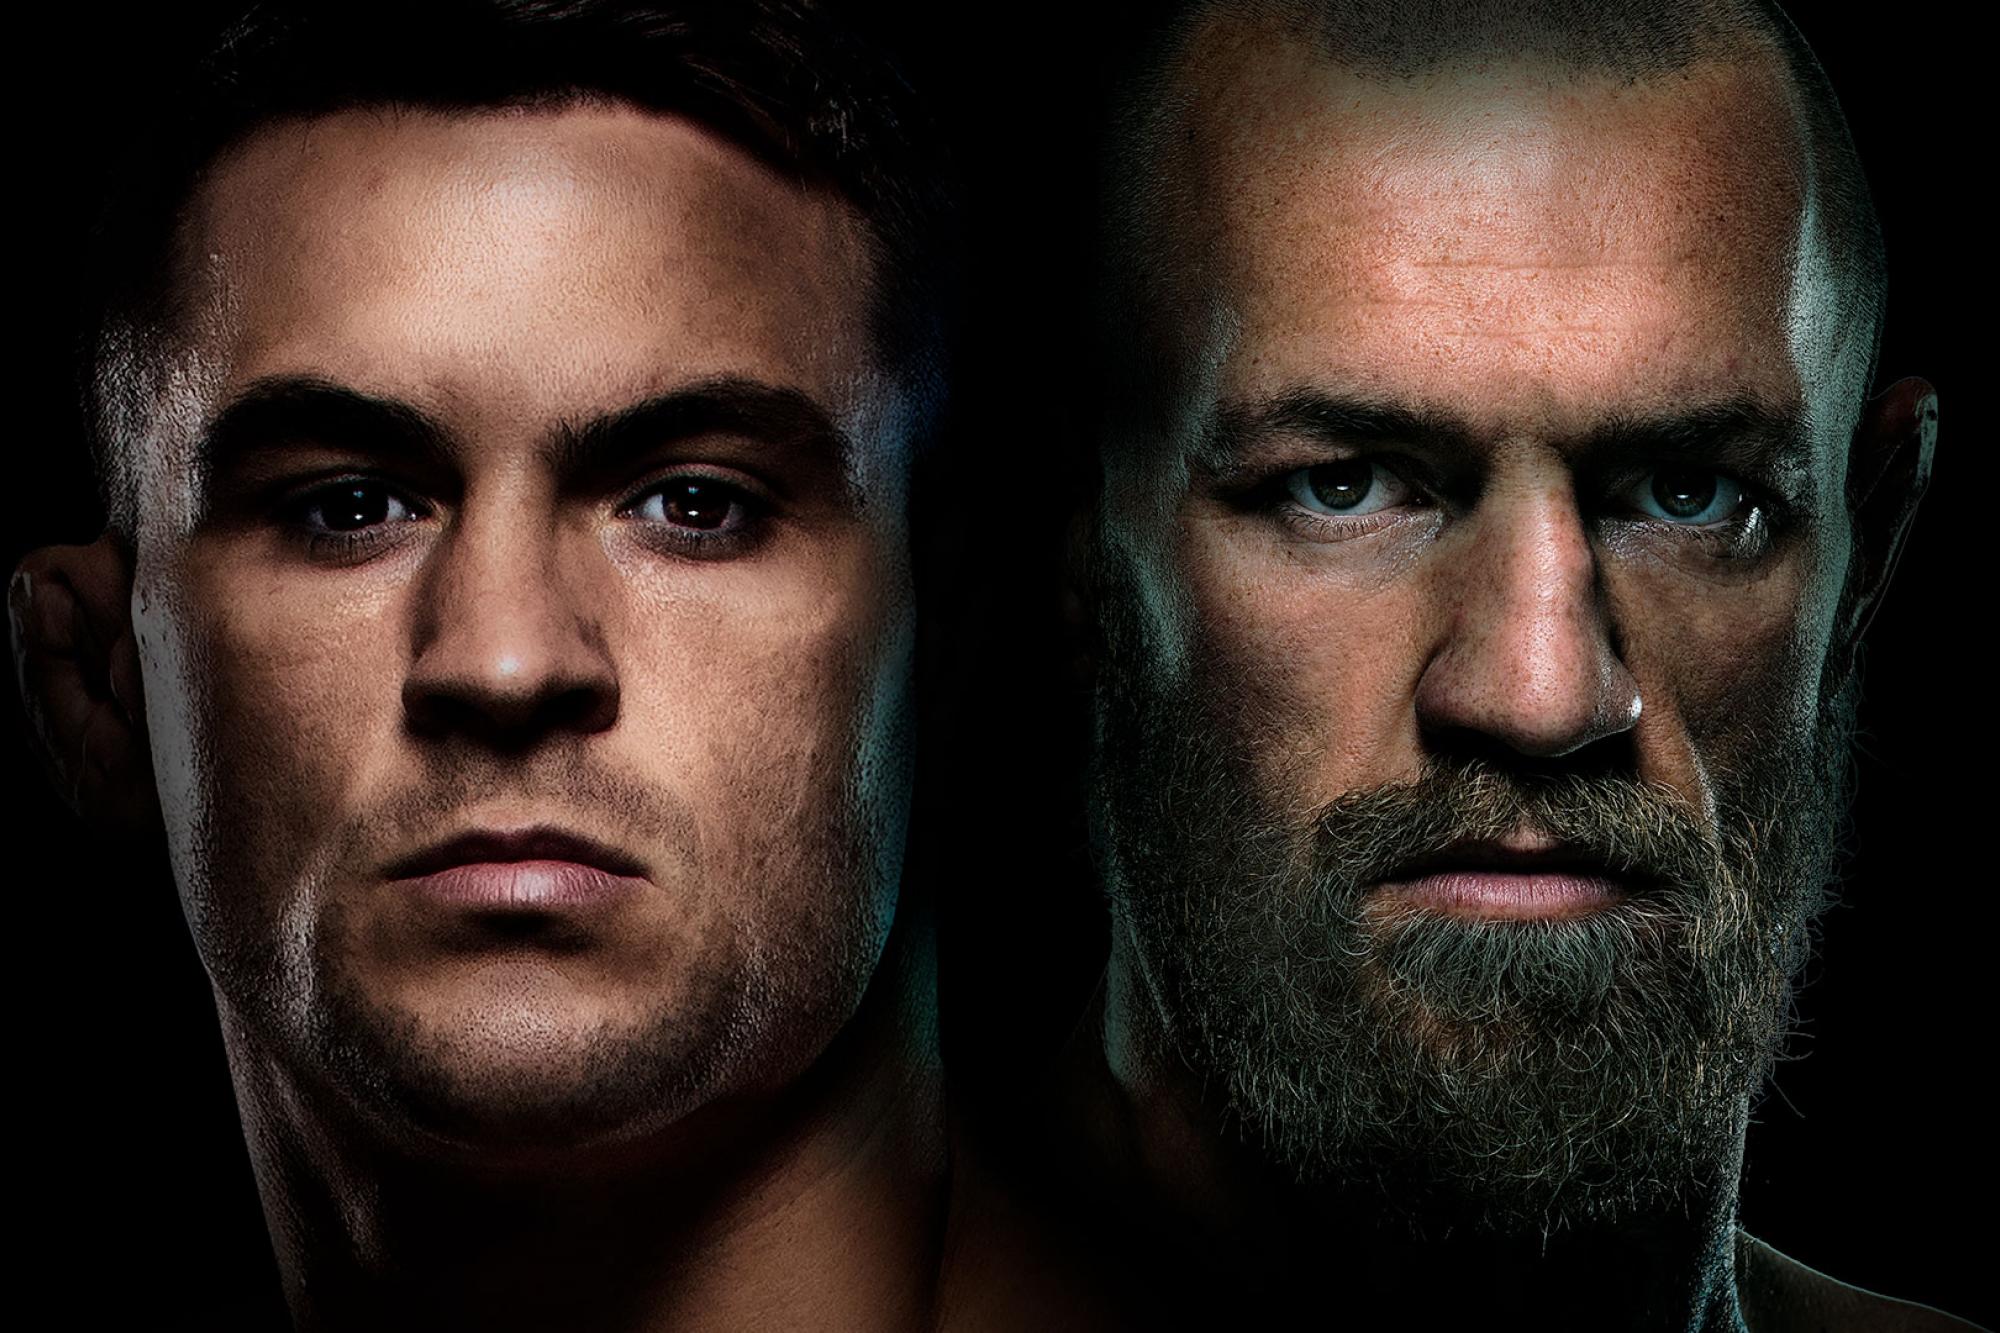 UFC 264 - Las Vegas - Poster et affiche